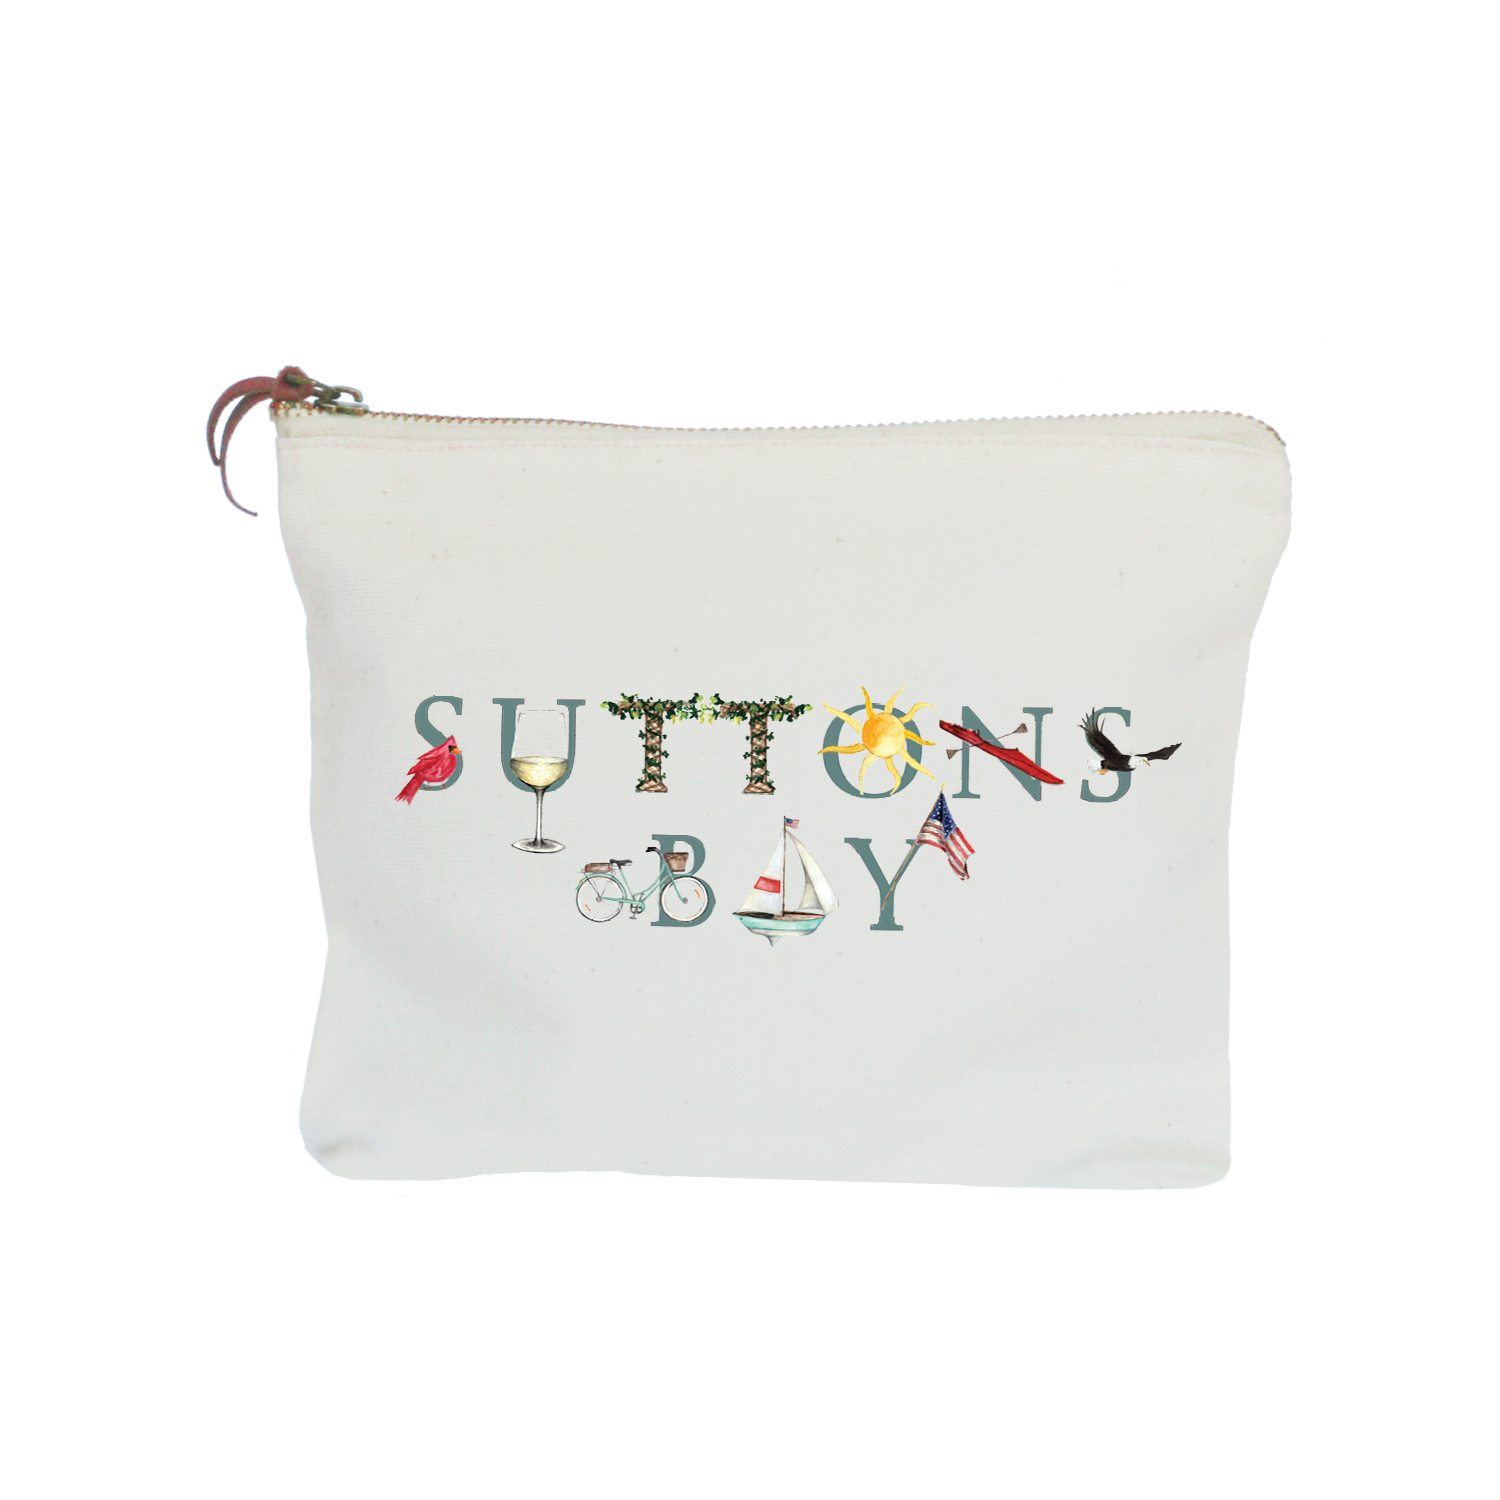 Suttons Bay zipper pouch